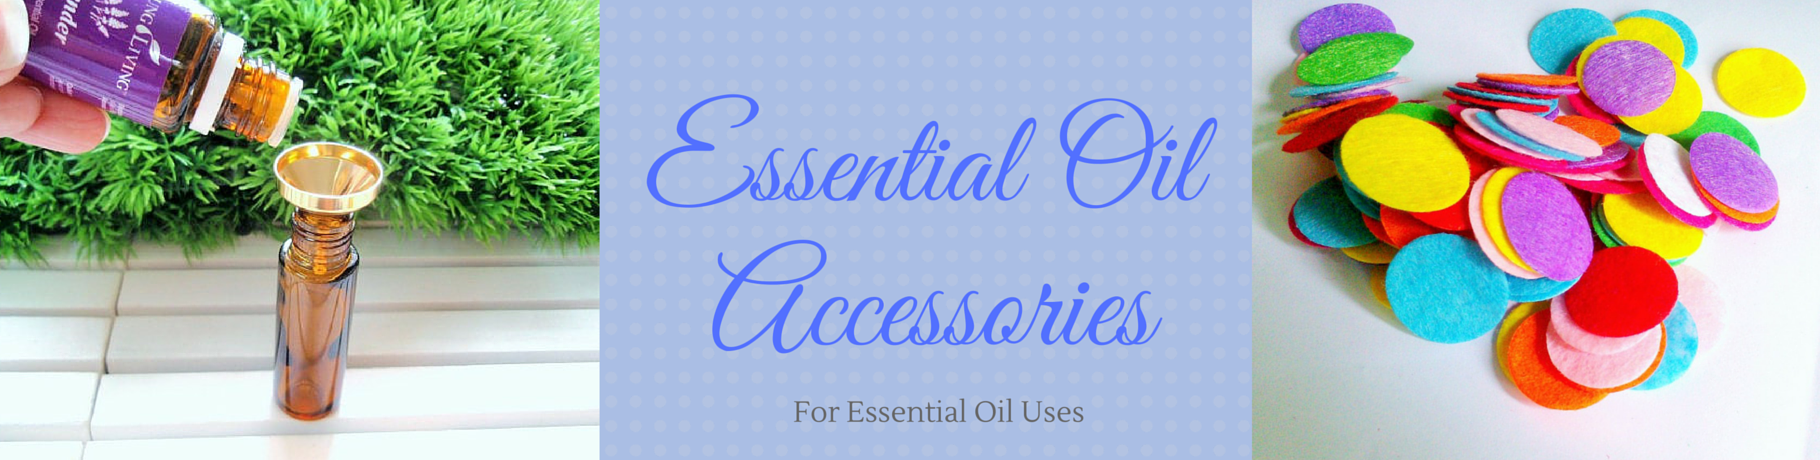 Essential Oil Accessories